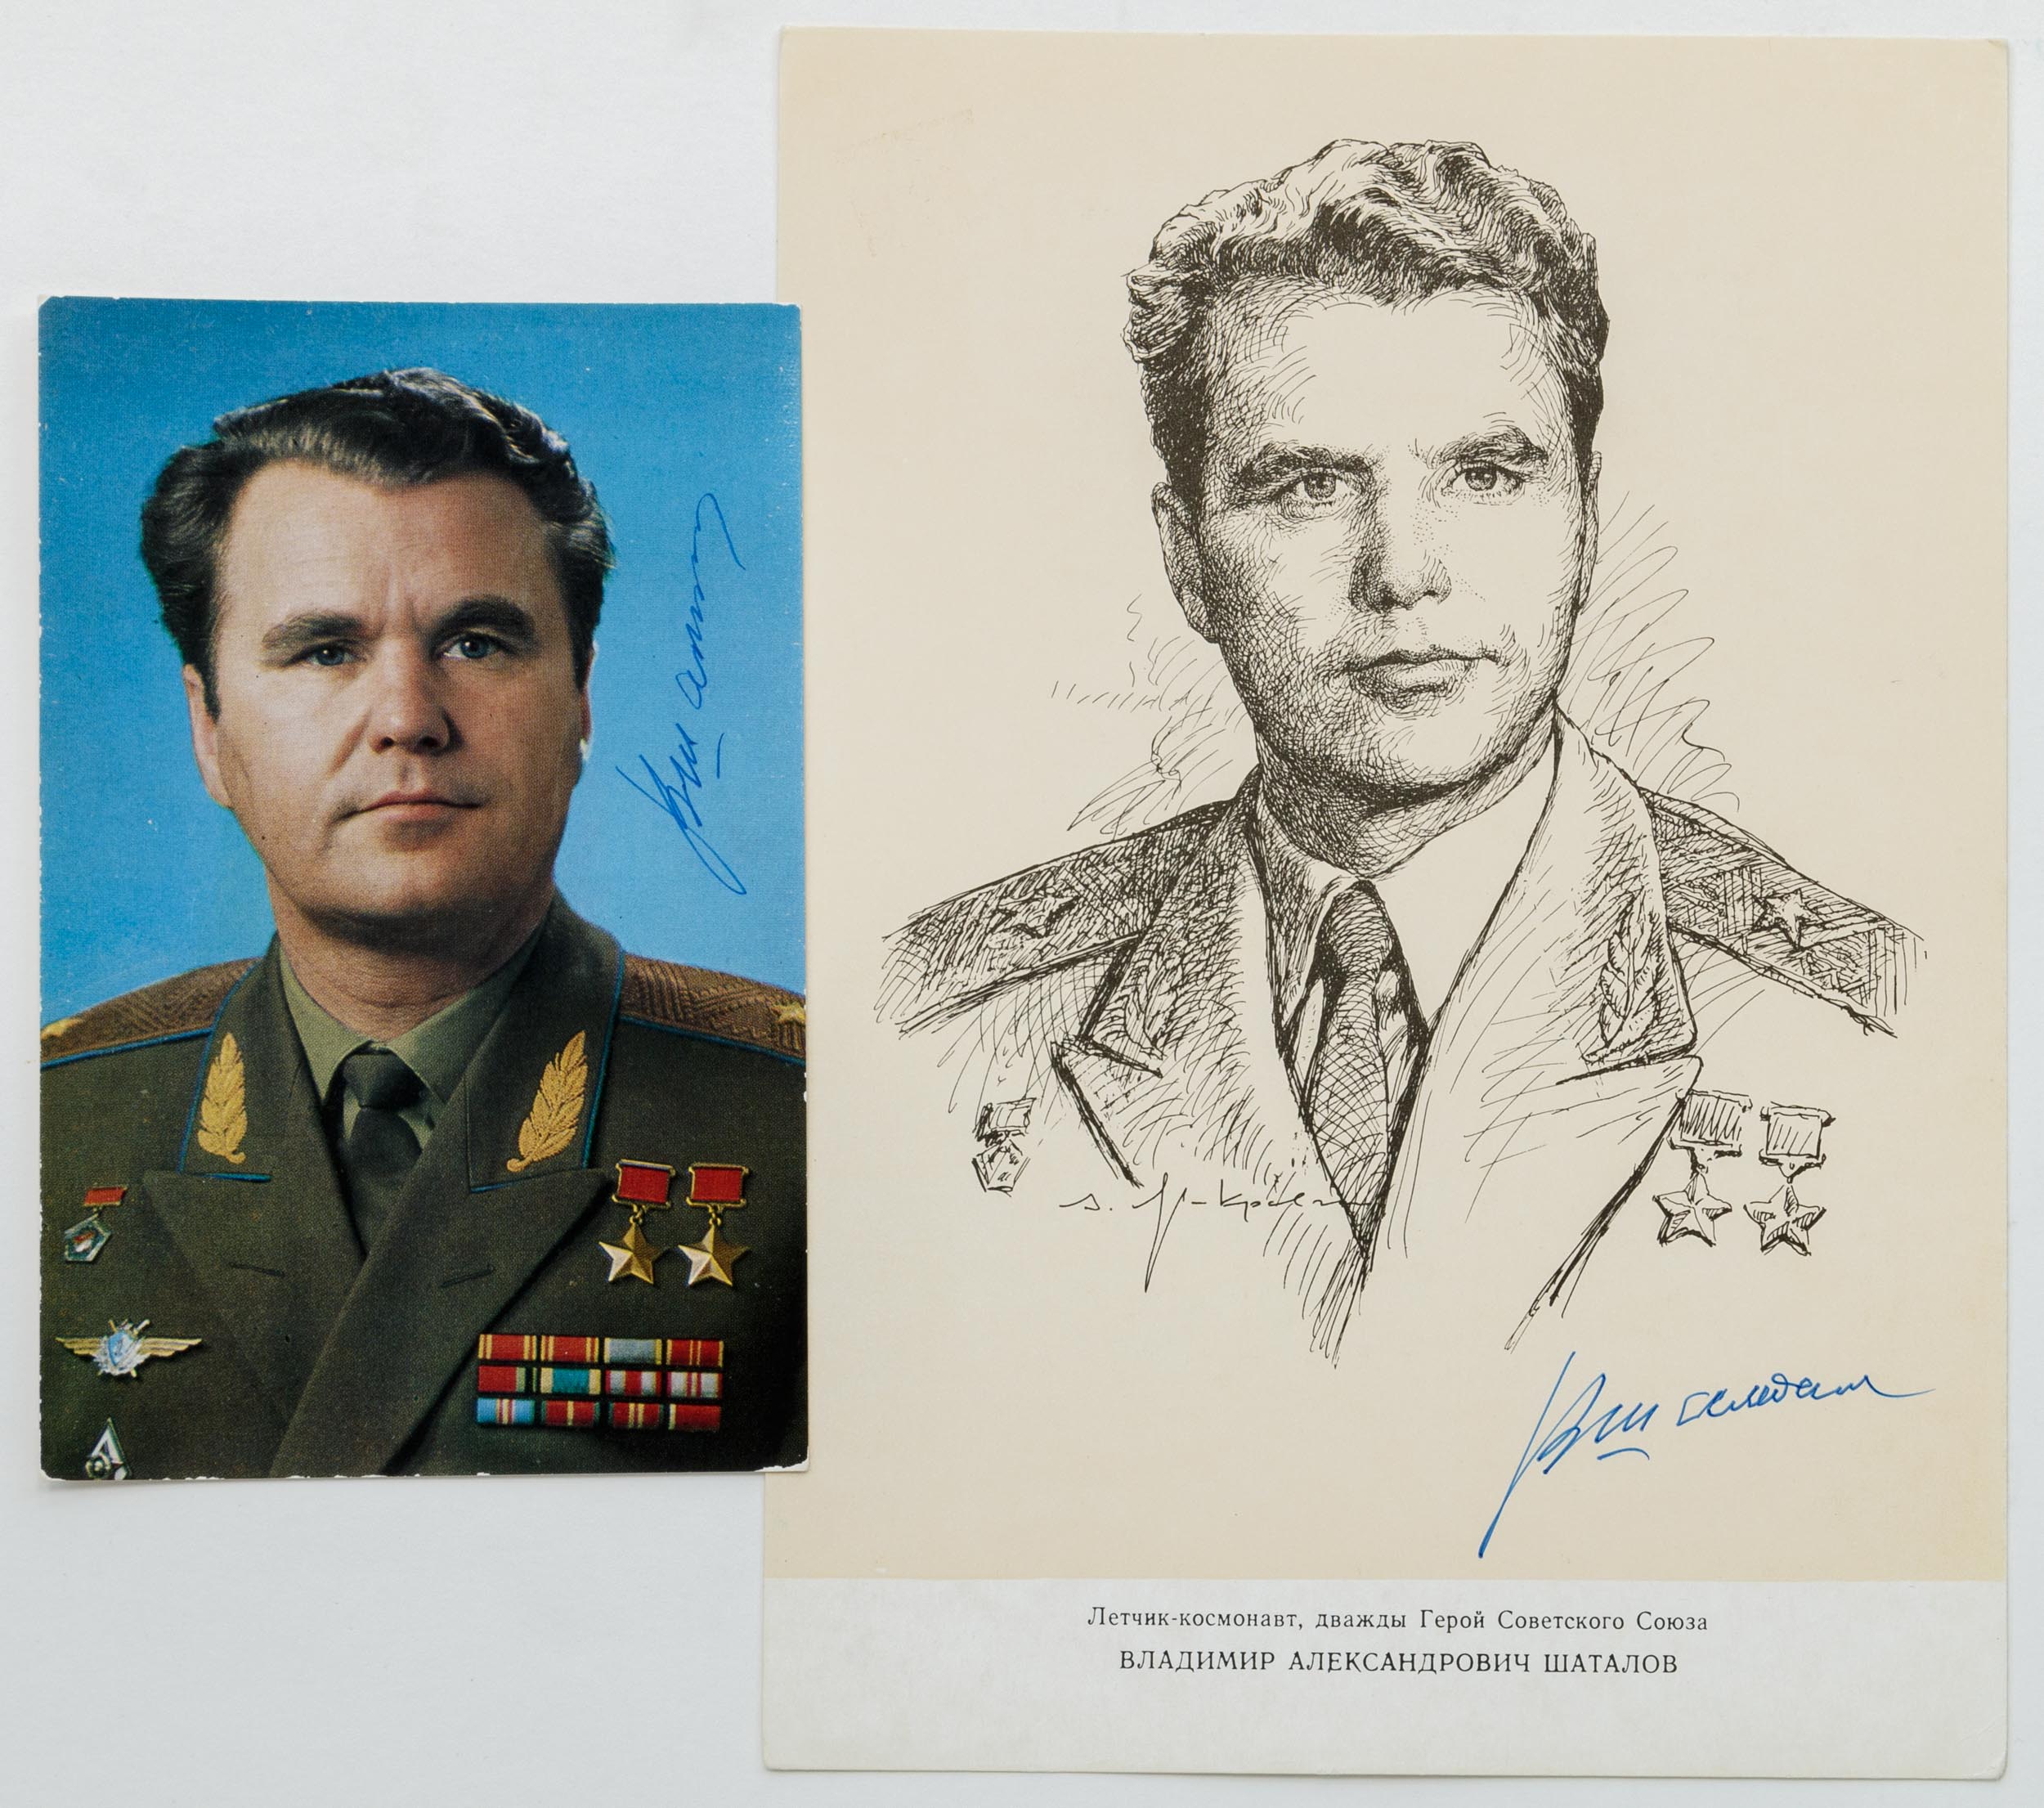 Сет из фотооткрытки с портретом и репродукции с портретом летчика-космонавта В.А. Шаталова, с автографами.